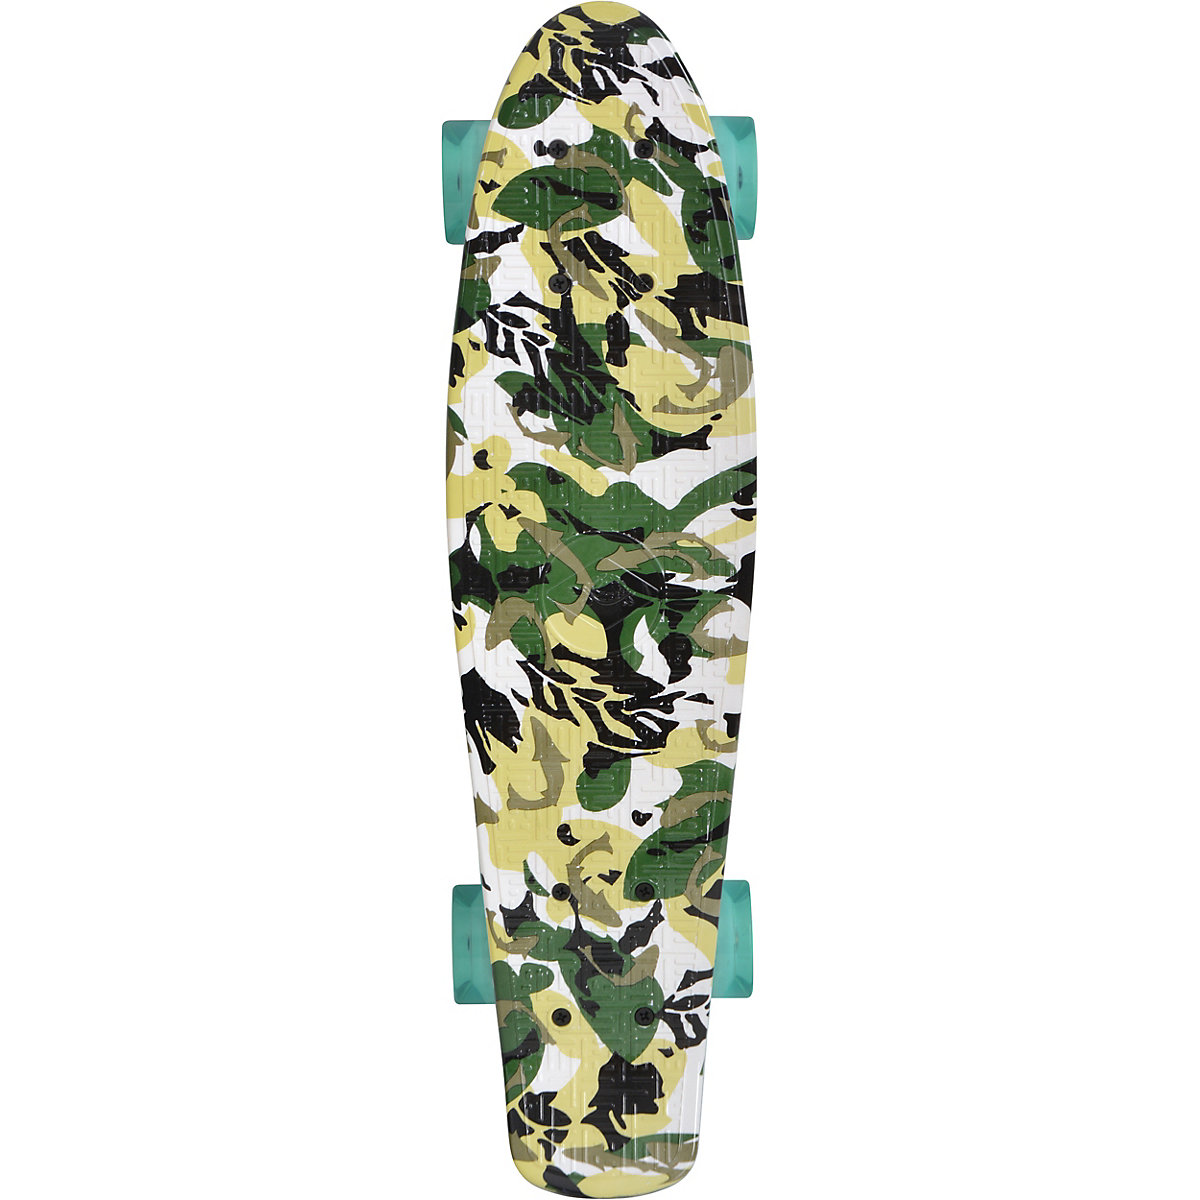 Schildkröt Retro Skateboard Free Spirit Camouflage